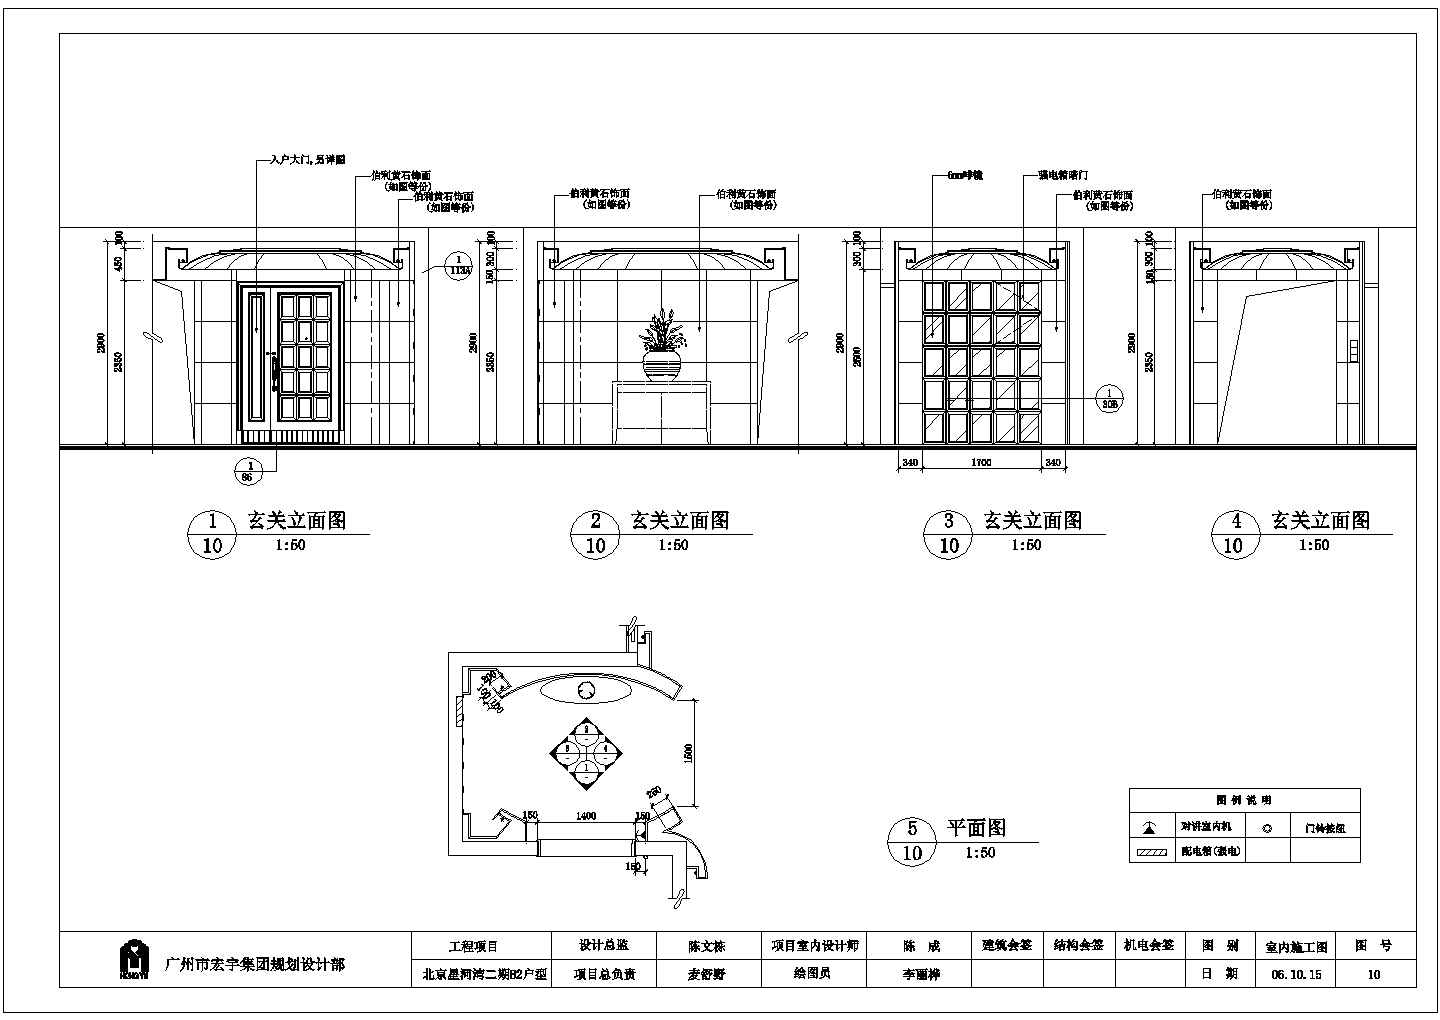 北京星河湾二期B2户型详细建筑施工图